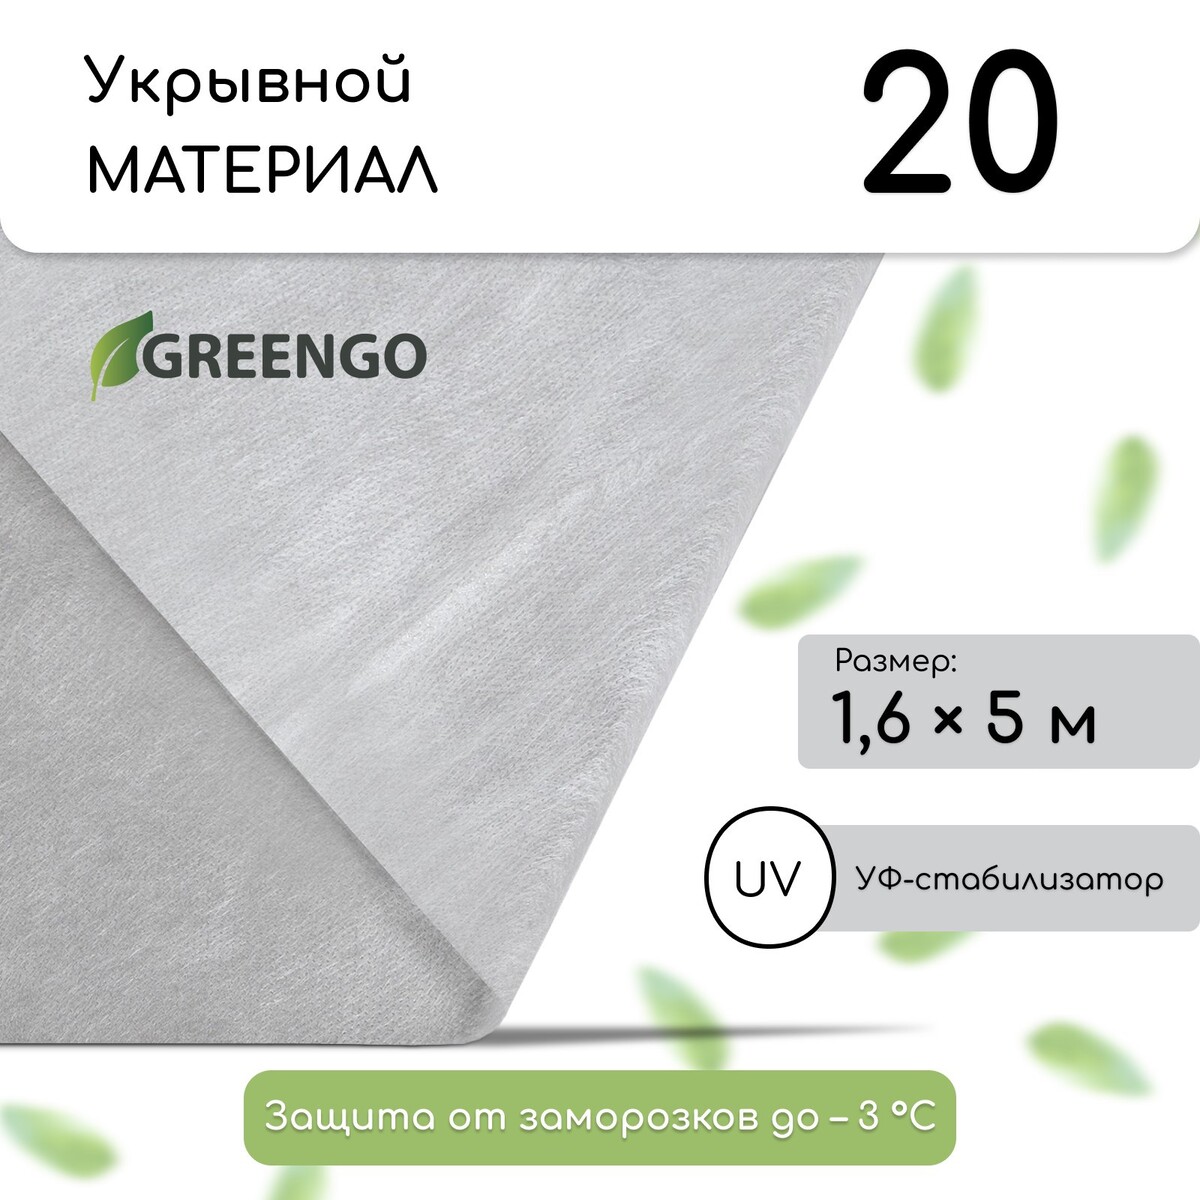 Материал укрывной, 5 × 1.6 м, плотность 20 г/м², спанбонд с уф-стабилизатором, белый, greengo, эконом 20%